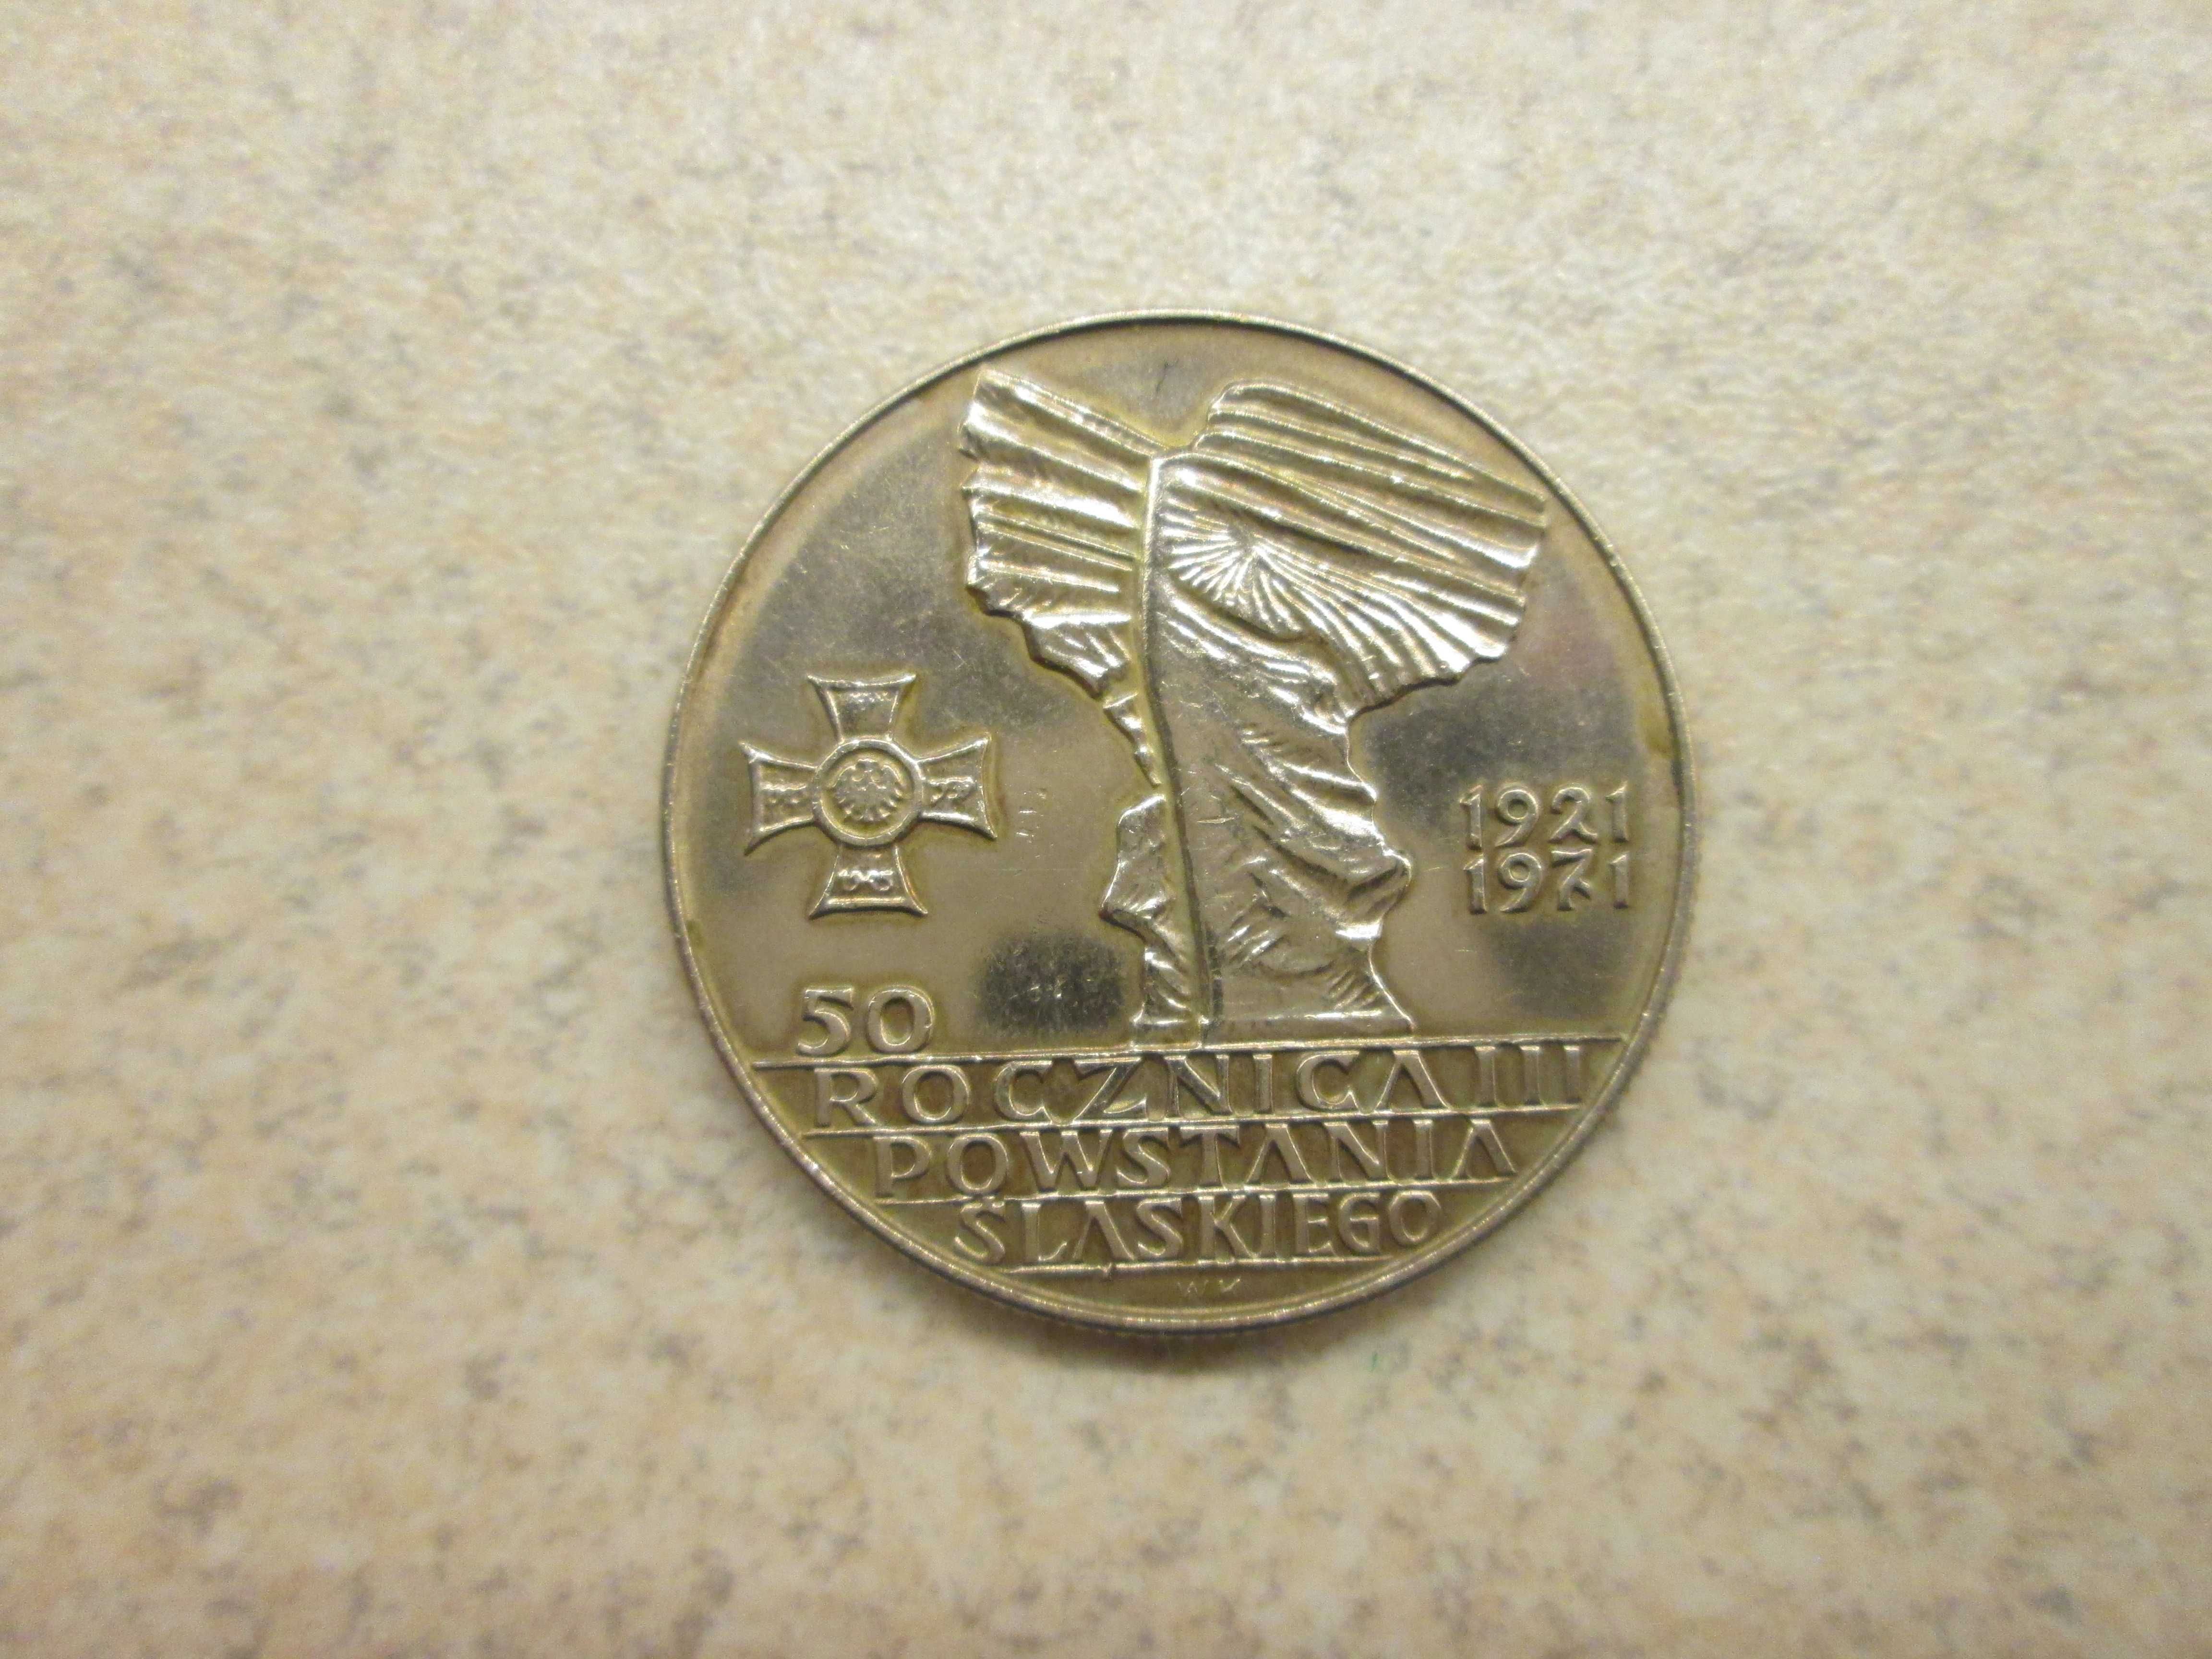 Moneta 10 zł OB064 50 rocznica Powstania Śląskiego 1971 r